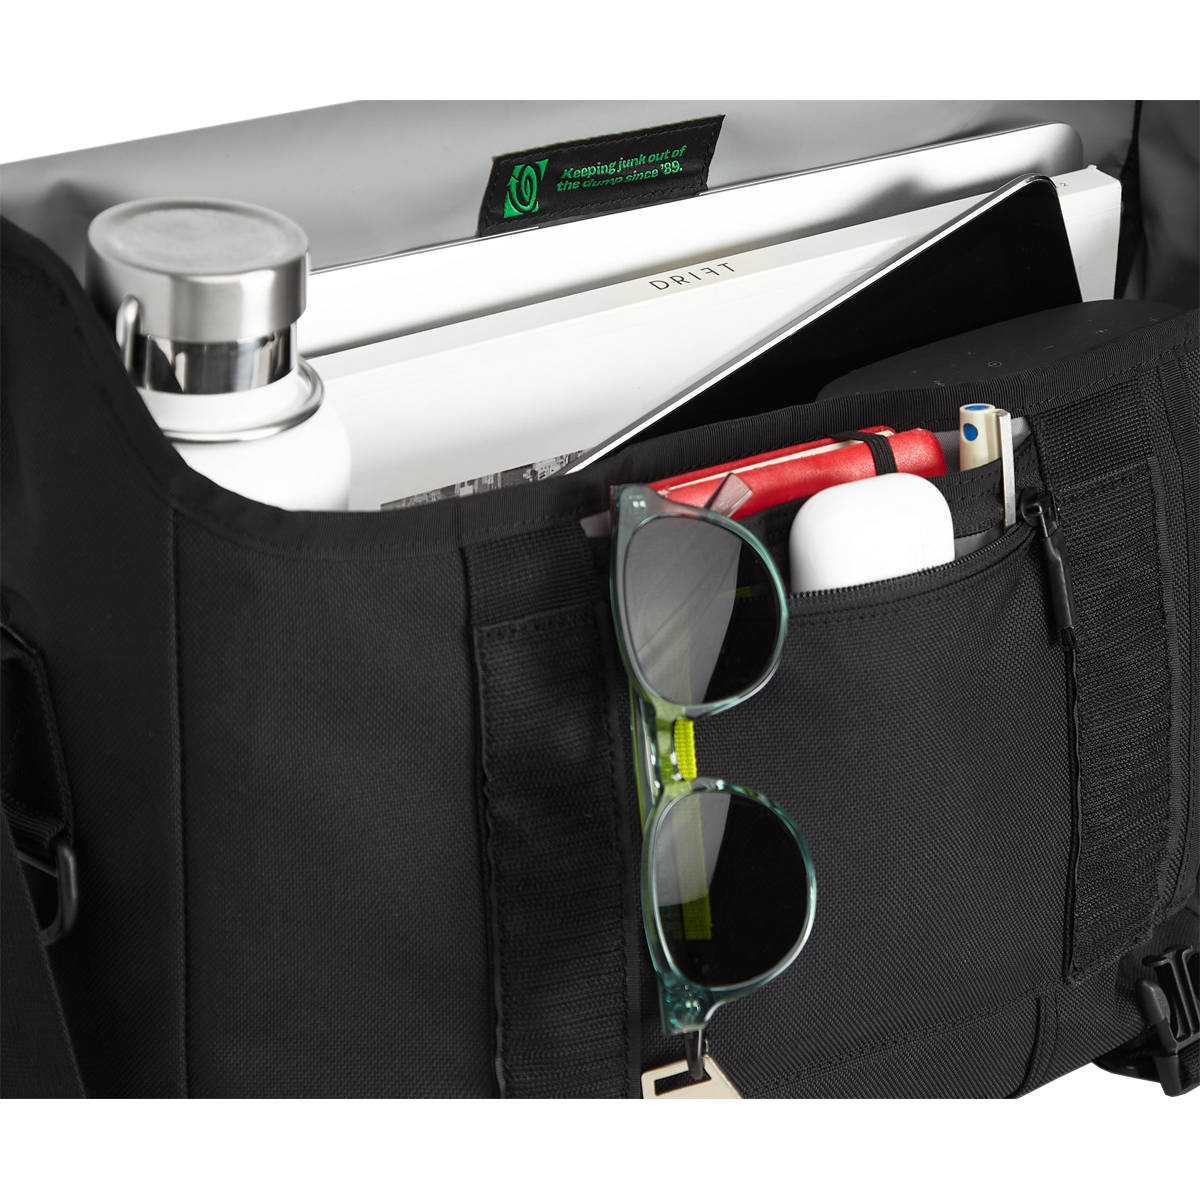 TIMBUK2 Black Shoulder Bike Messenger Bag w/ Padded Laptop Pocket Size Med  USED